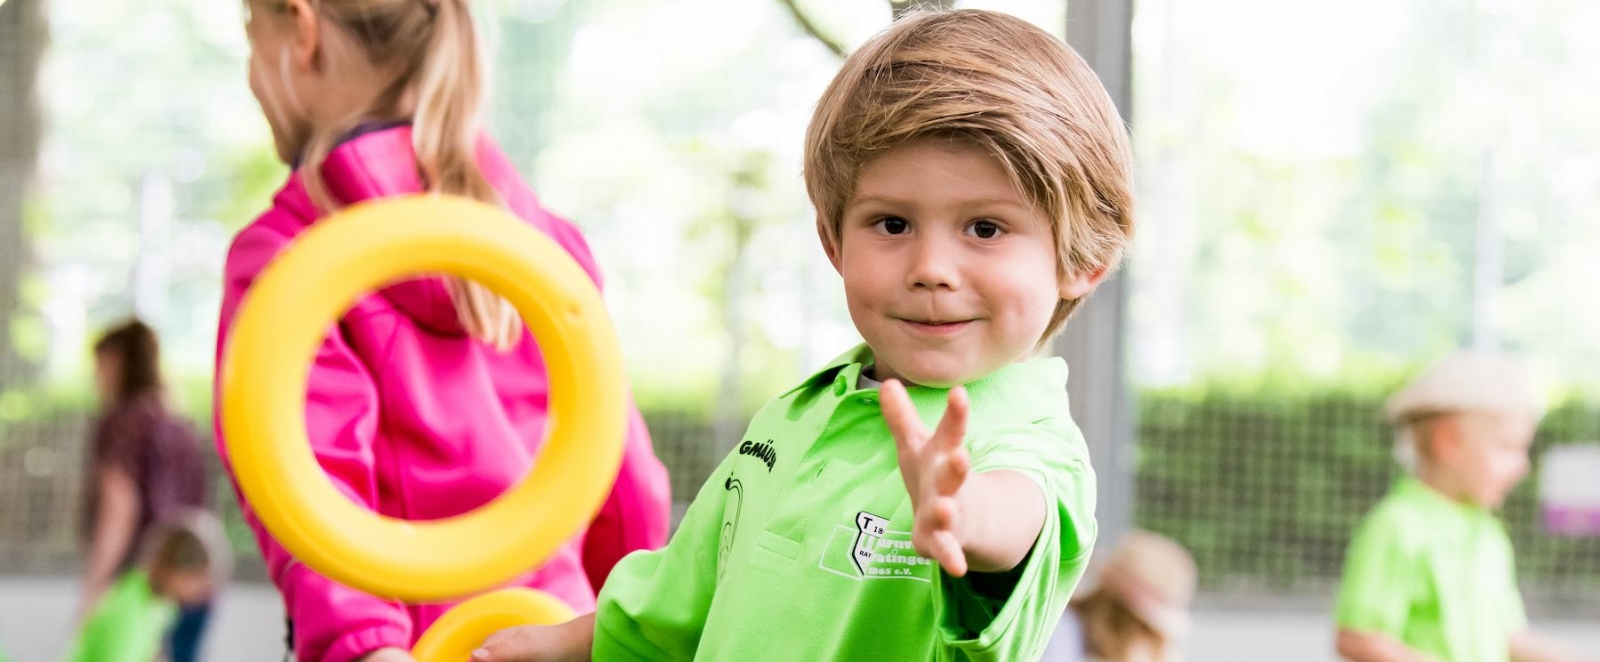 Ein kleiner, blonder Junge im grünen Hemd streckt lächelnd seine linke Hand nach der Kamera aus.